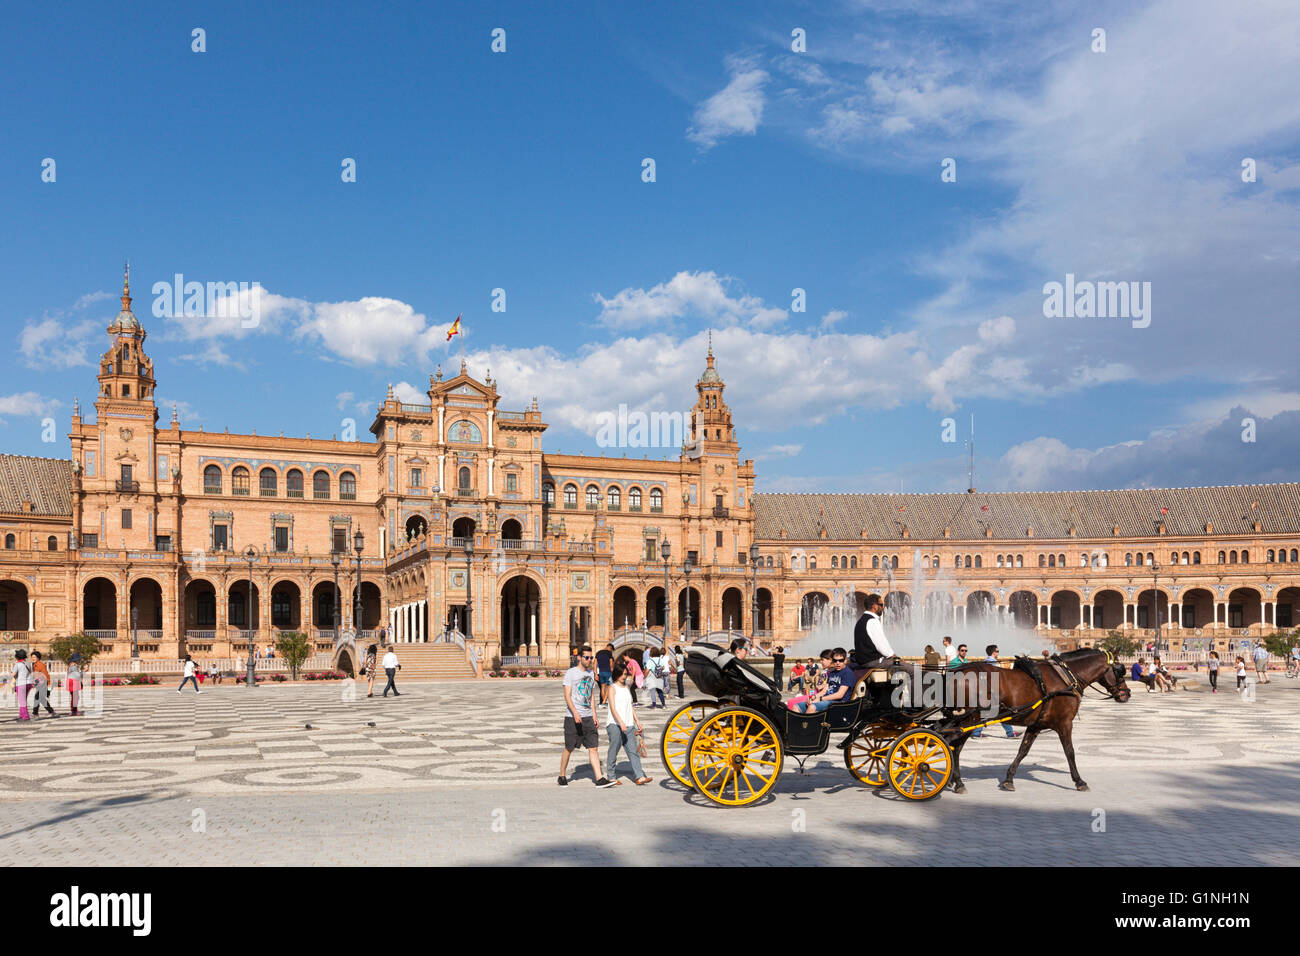 UNESCO World Heritage Site Plaza de Espana, Siviglia, Spagna. Un carro trainato da cavalli e turisti in primo piano. Foto Stock